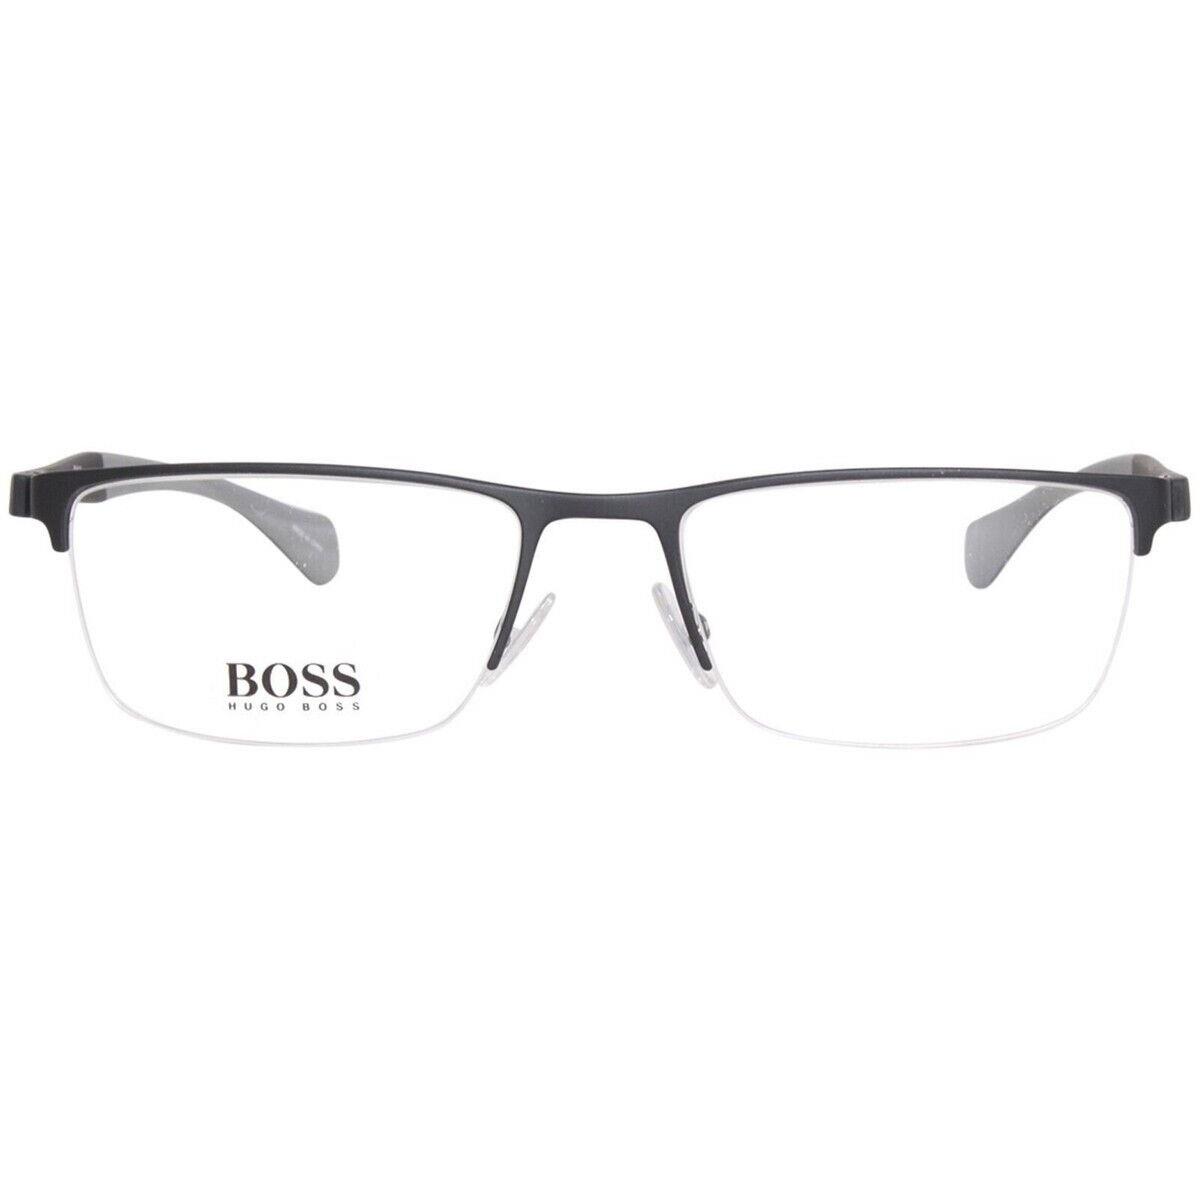 Hugo Boss Eyeglasses BOSS1080-003-56 Size 56/19/Rectangular W Case